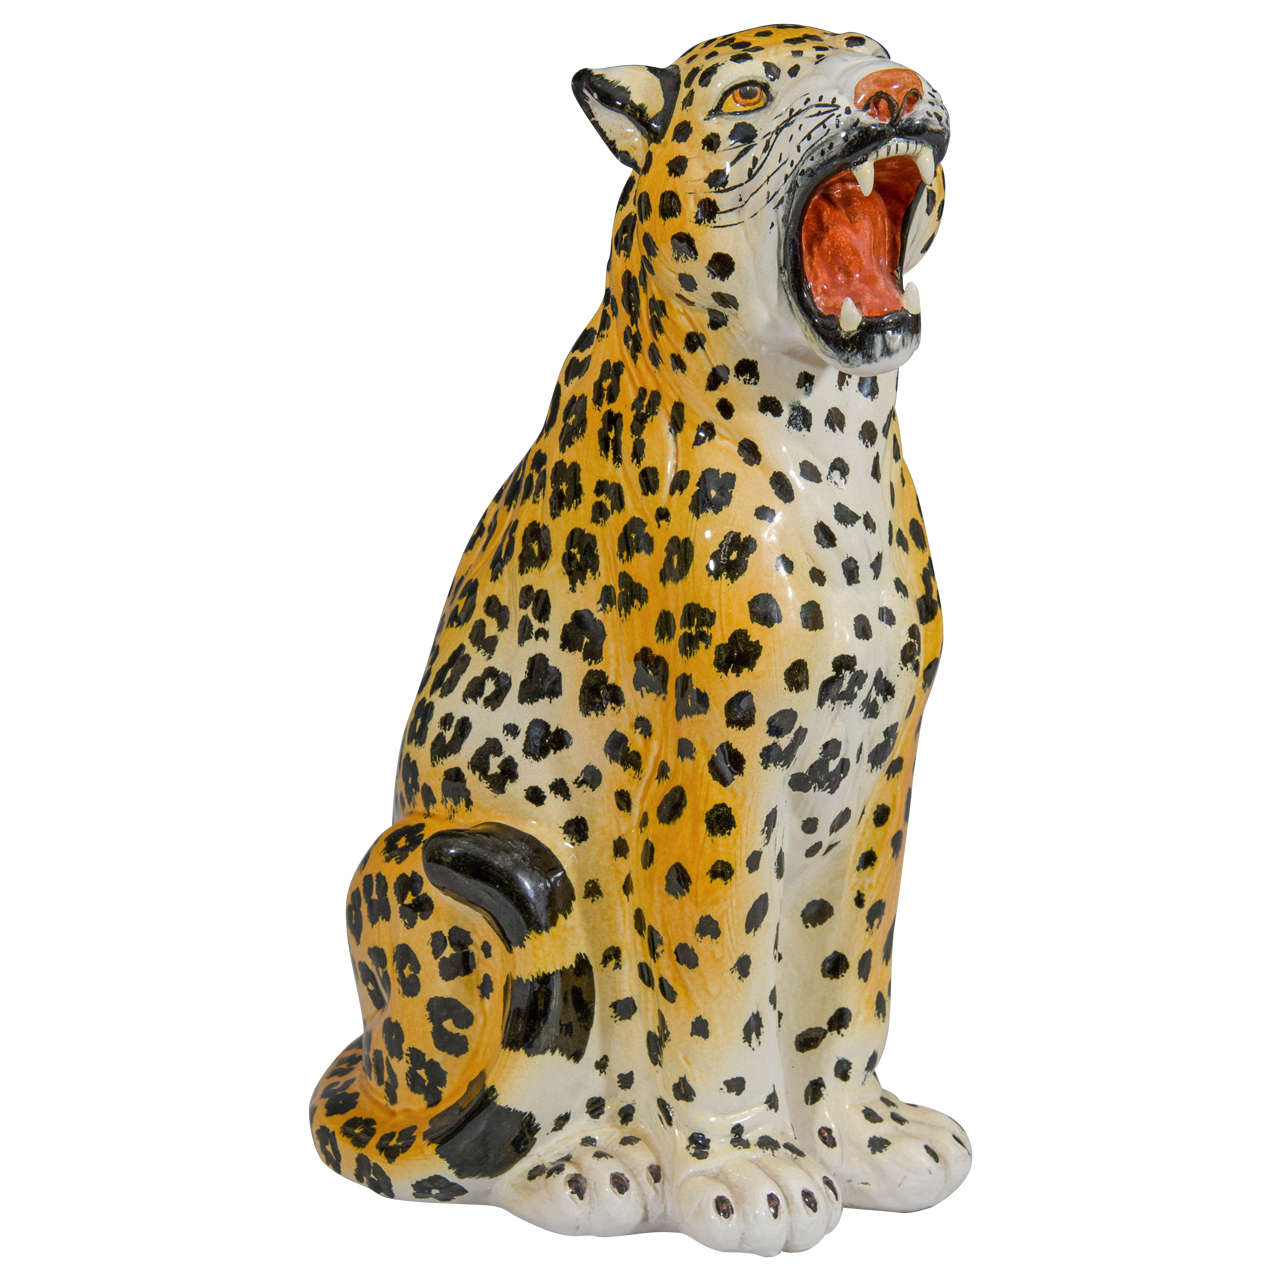 Midcentury Hand-Painted Italian Ceramic Leopard Sculpture